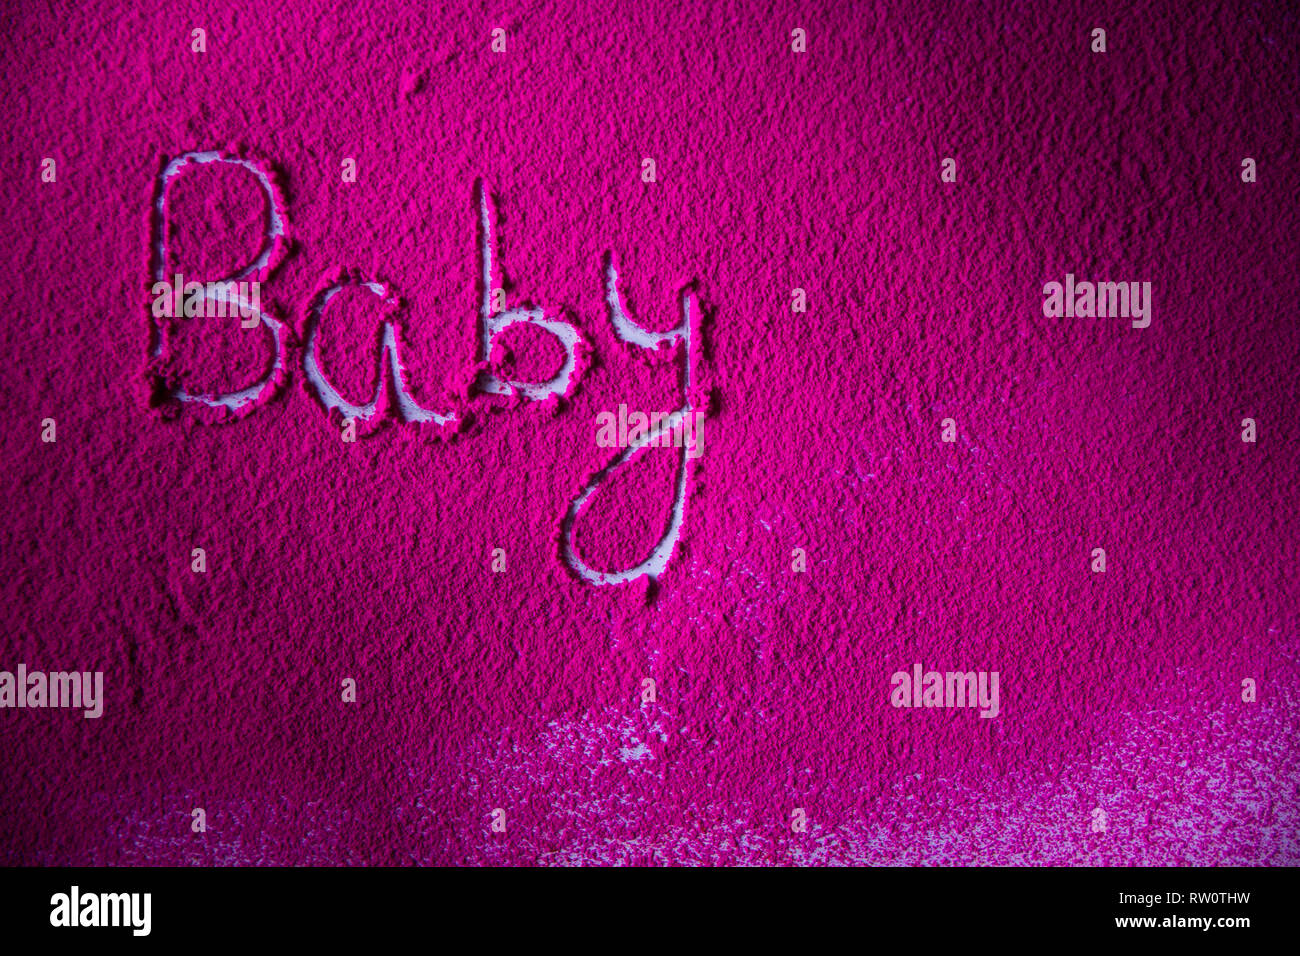 Polvere colorata parola scritta Baby Foto Stock